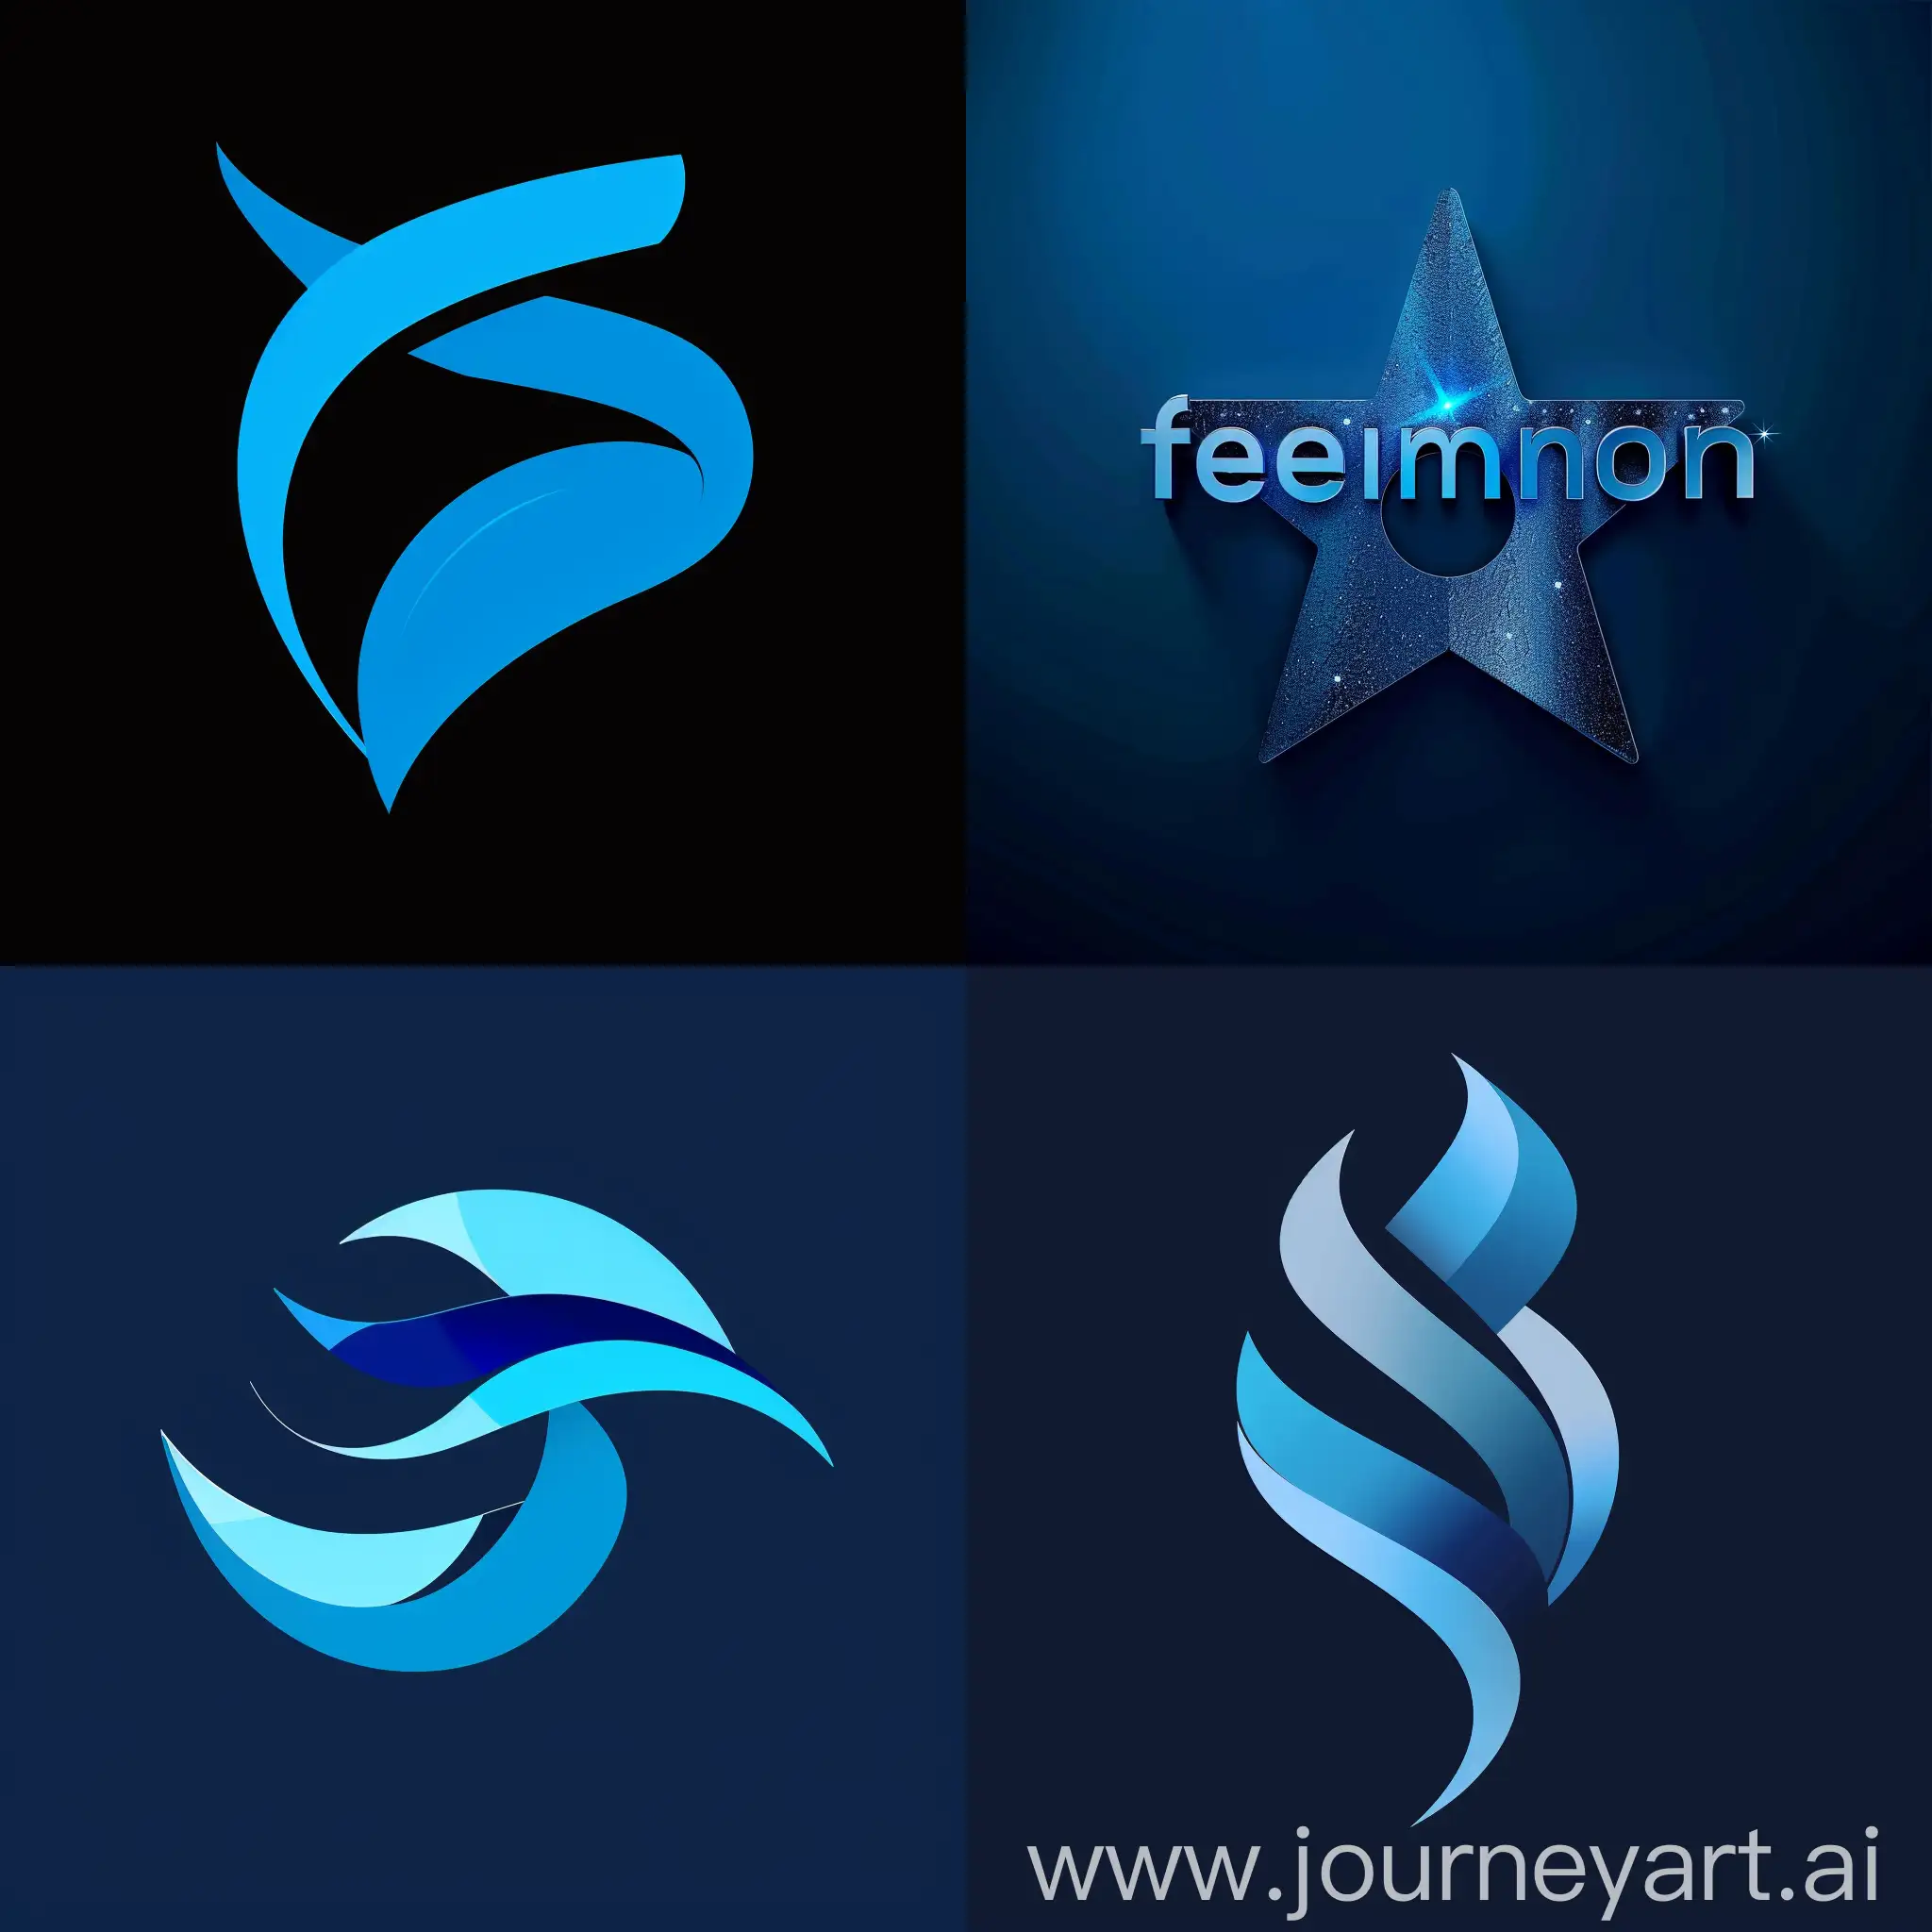 Make a new logo for telenor